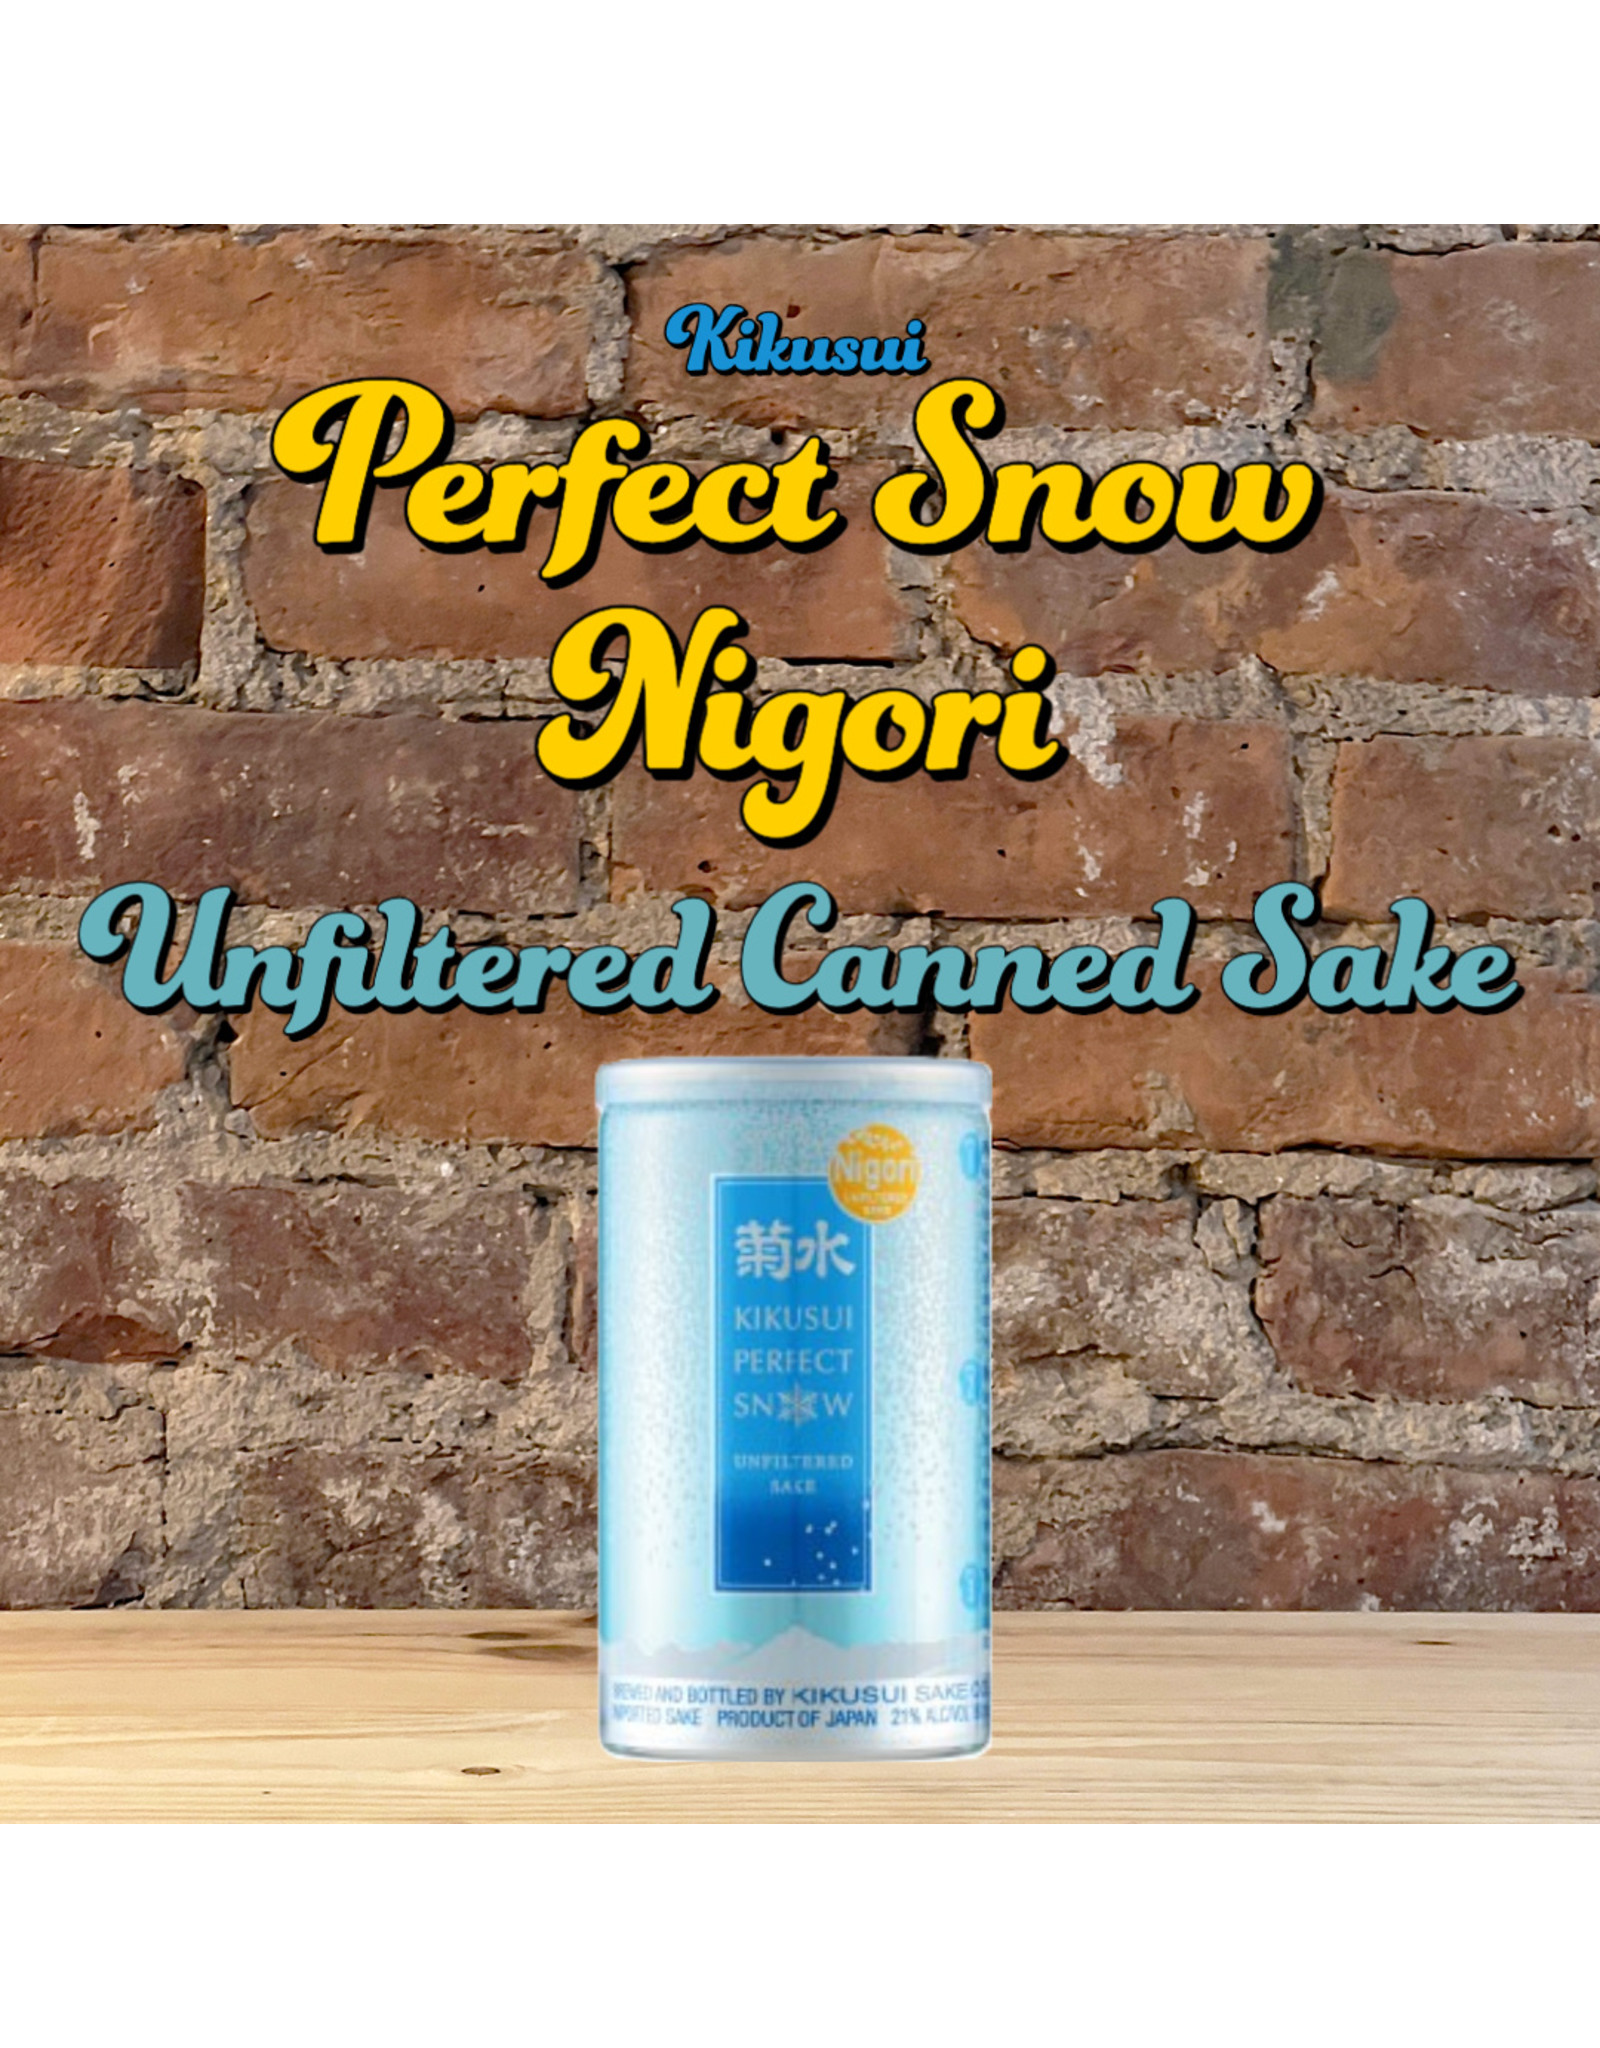 Kikusui - Perfect Snow Nigori Canned Sake